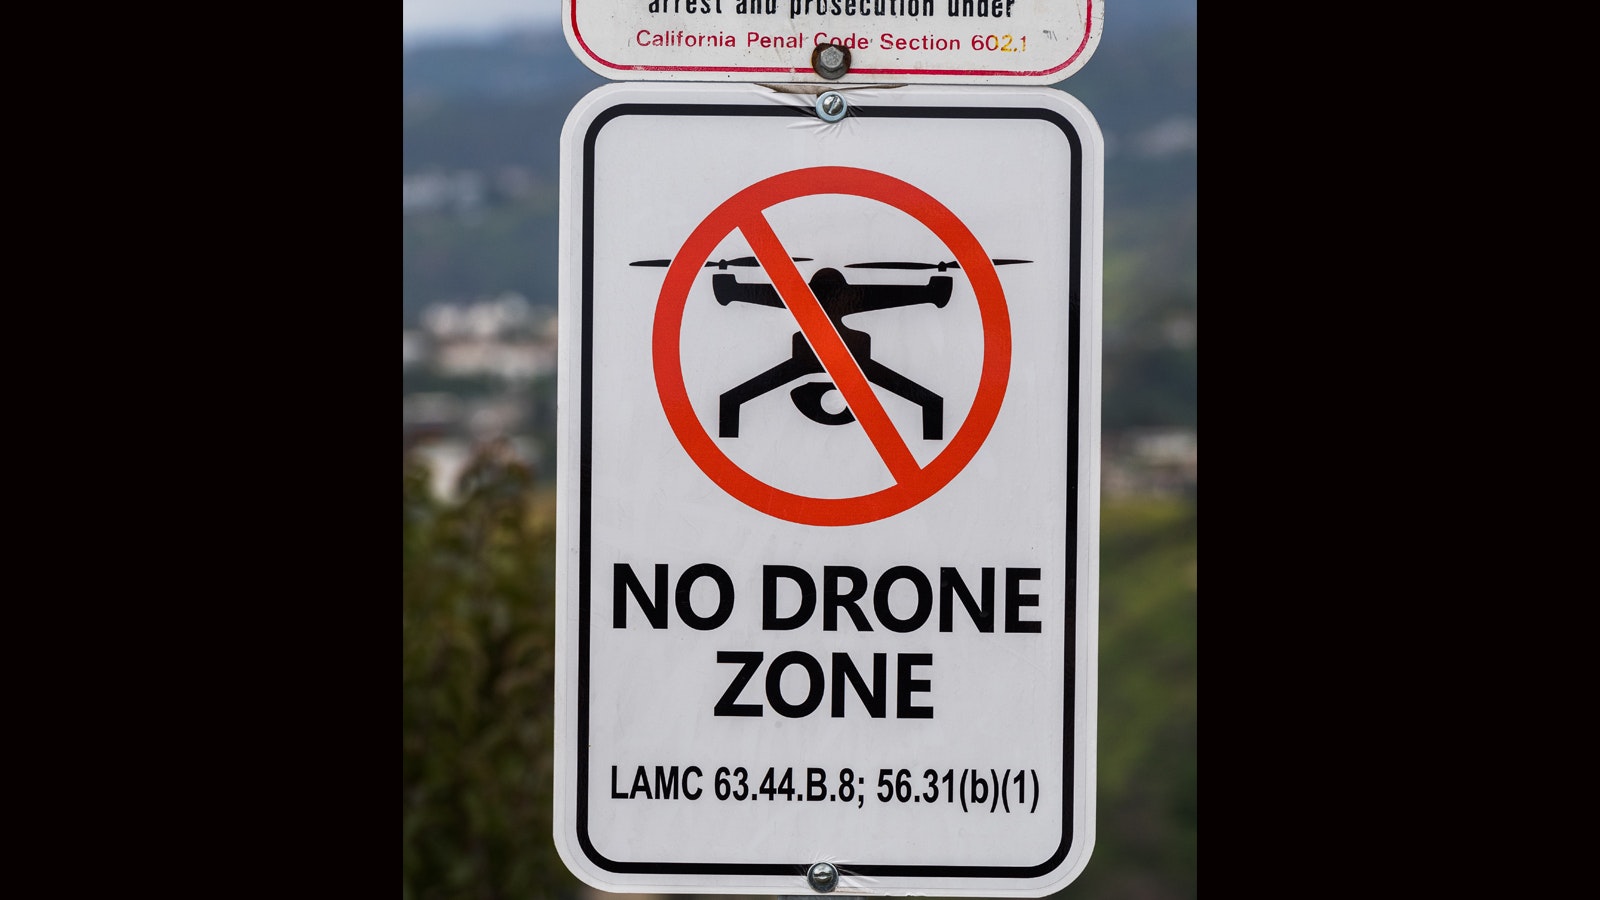 No drone zone 9 15 22